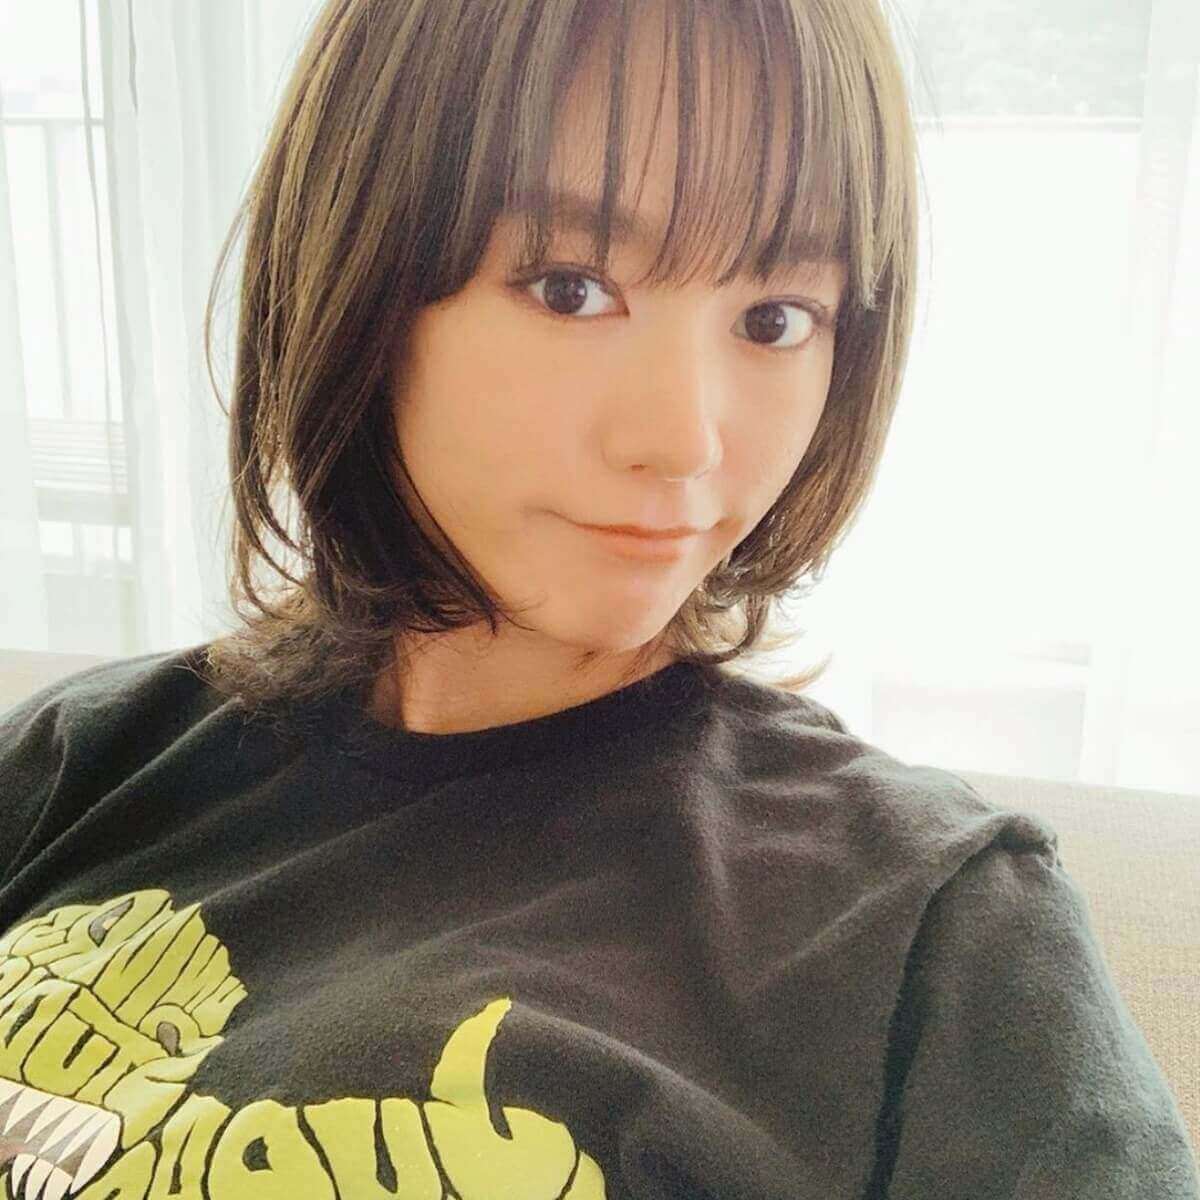 桐谷美玲 前髪を作った新ヘアスタイル披露で大反響 めっちゃ可愛い 日刊サイゾー